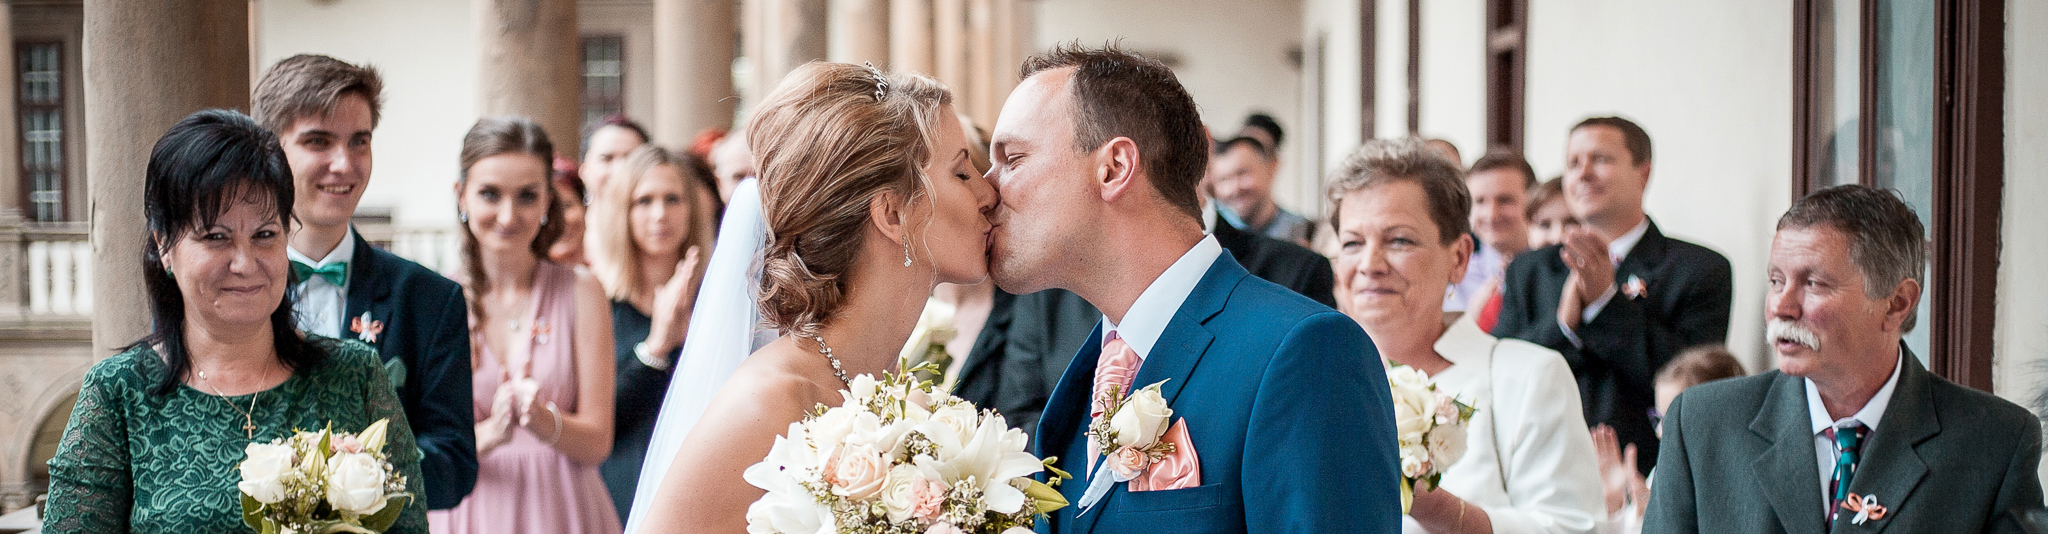 Novomanželský polibek - Svatební fotografie